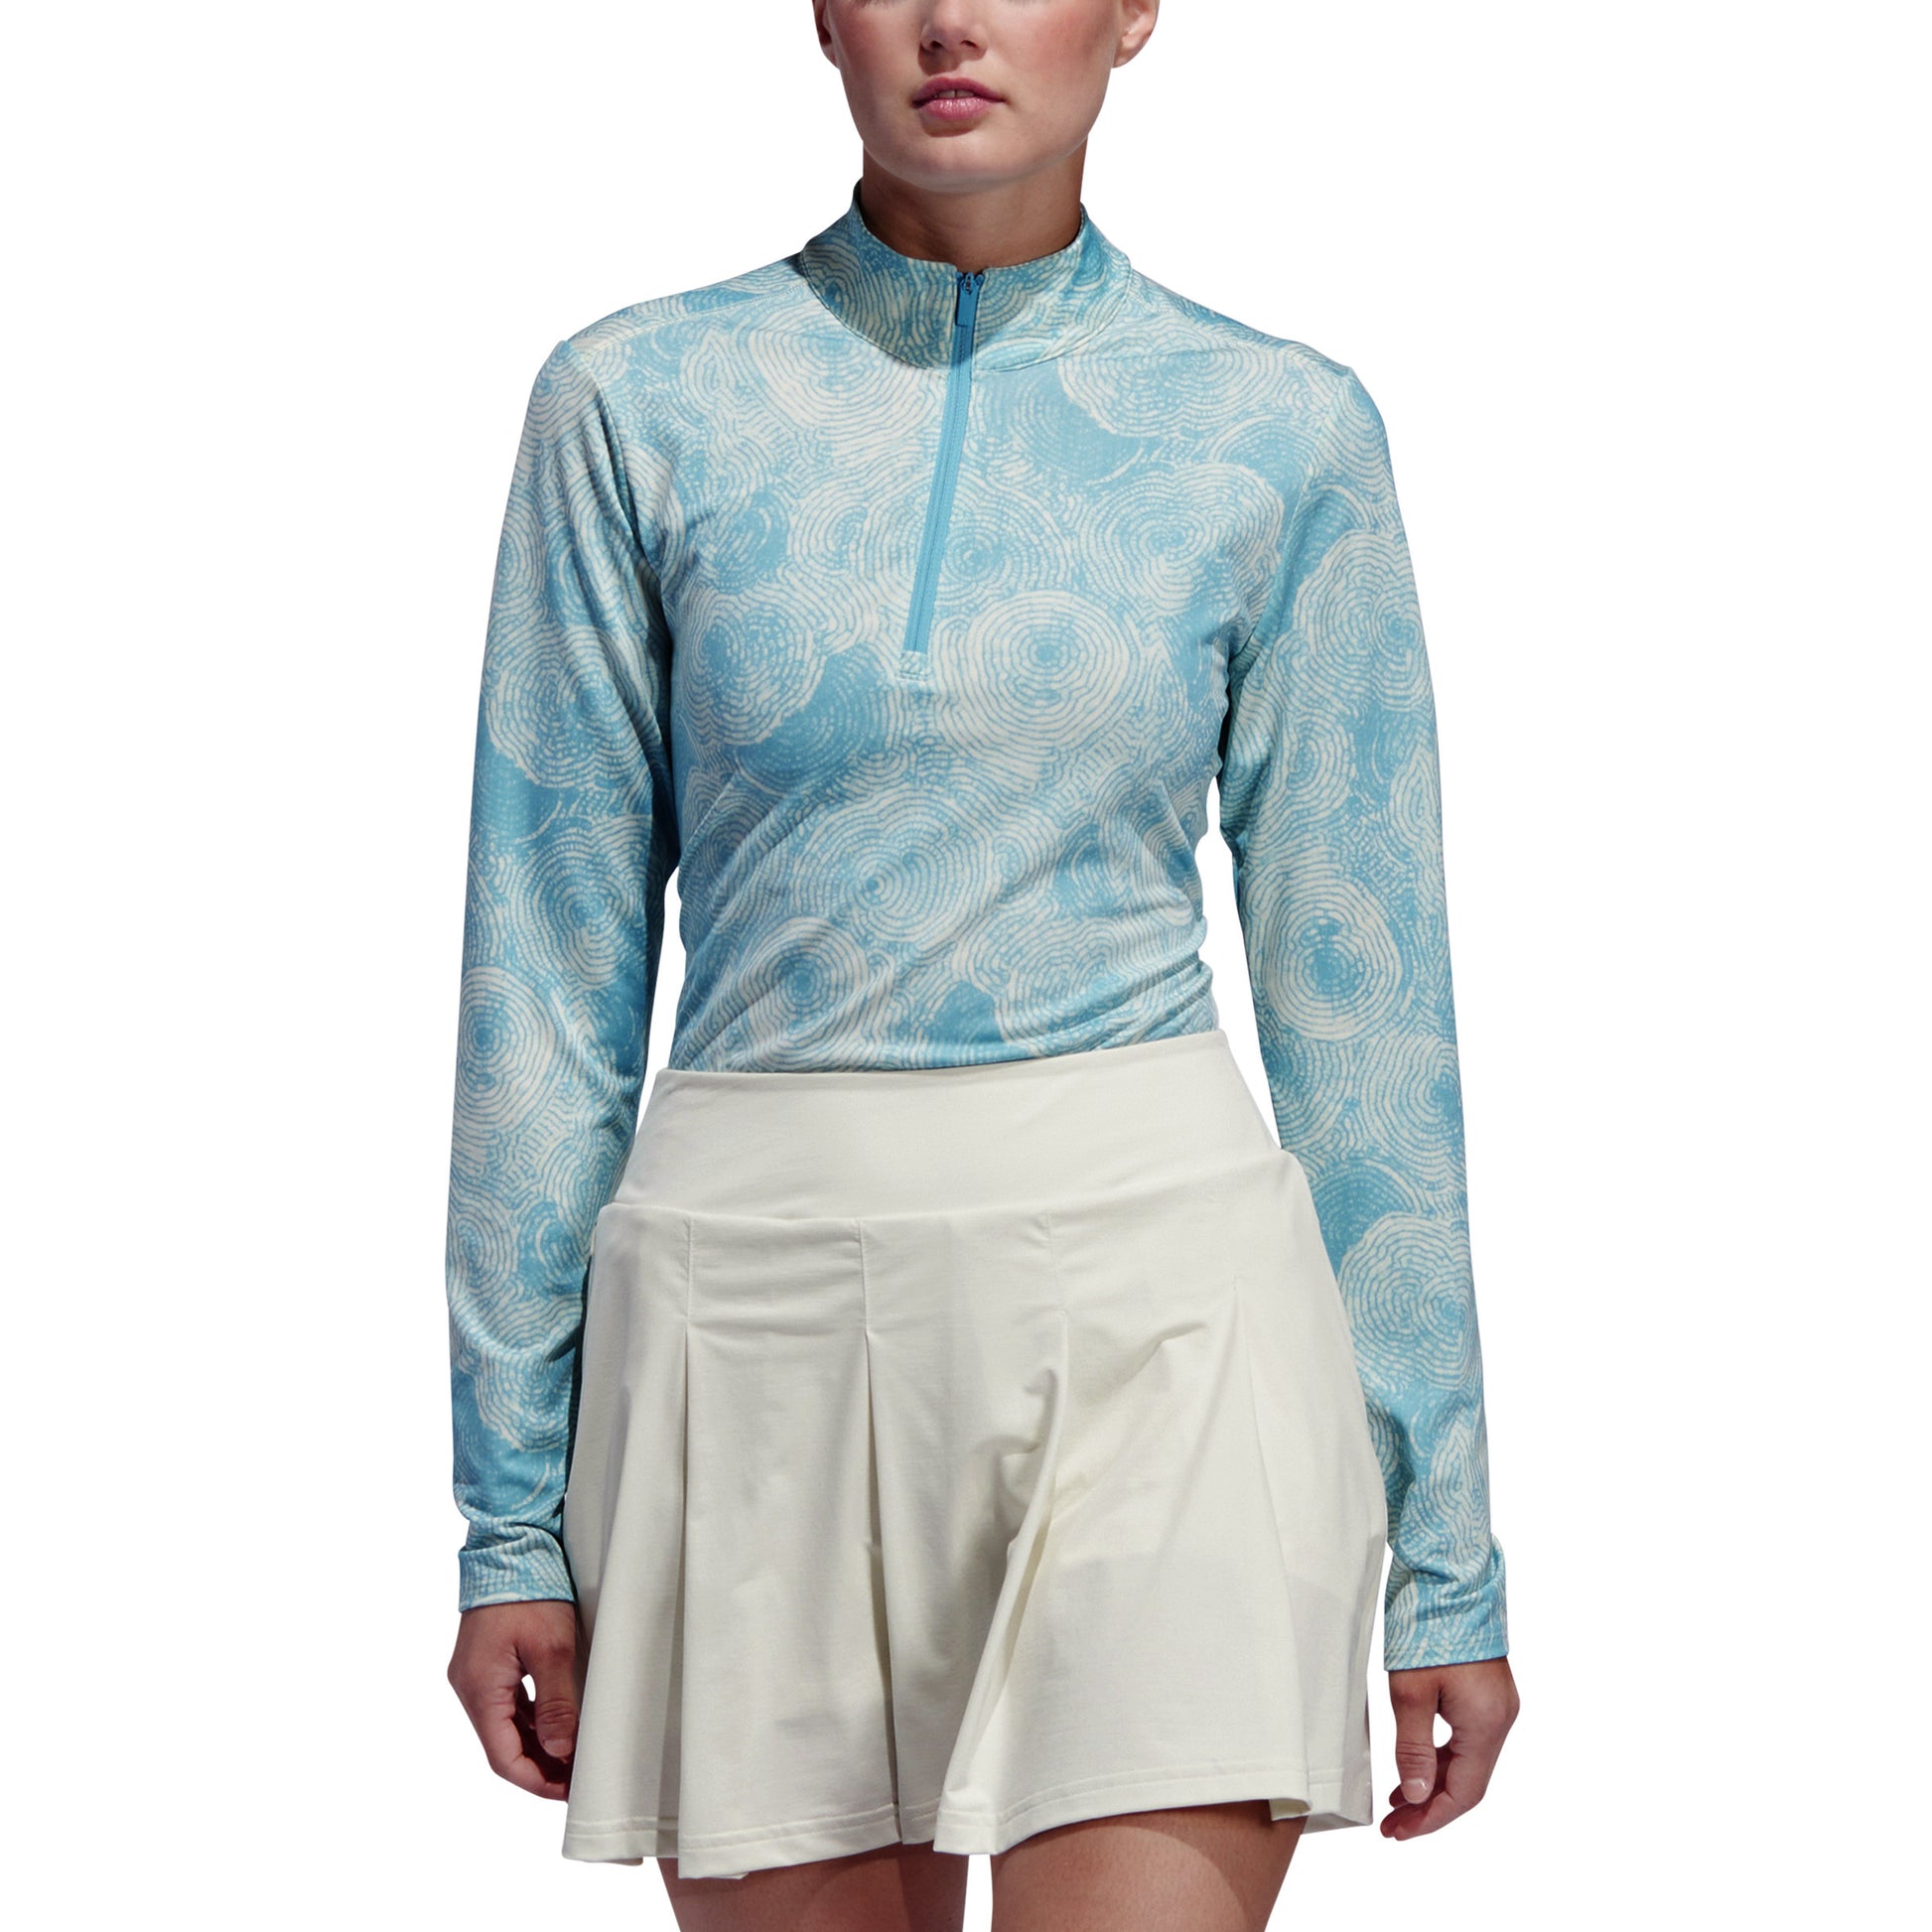 adidas Ladies Long Sleeve Golf Top with Tie-Dye Print in Semi Burst Blue